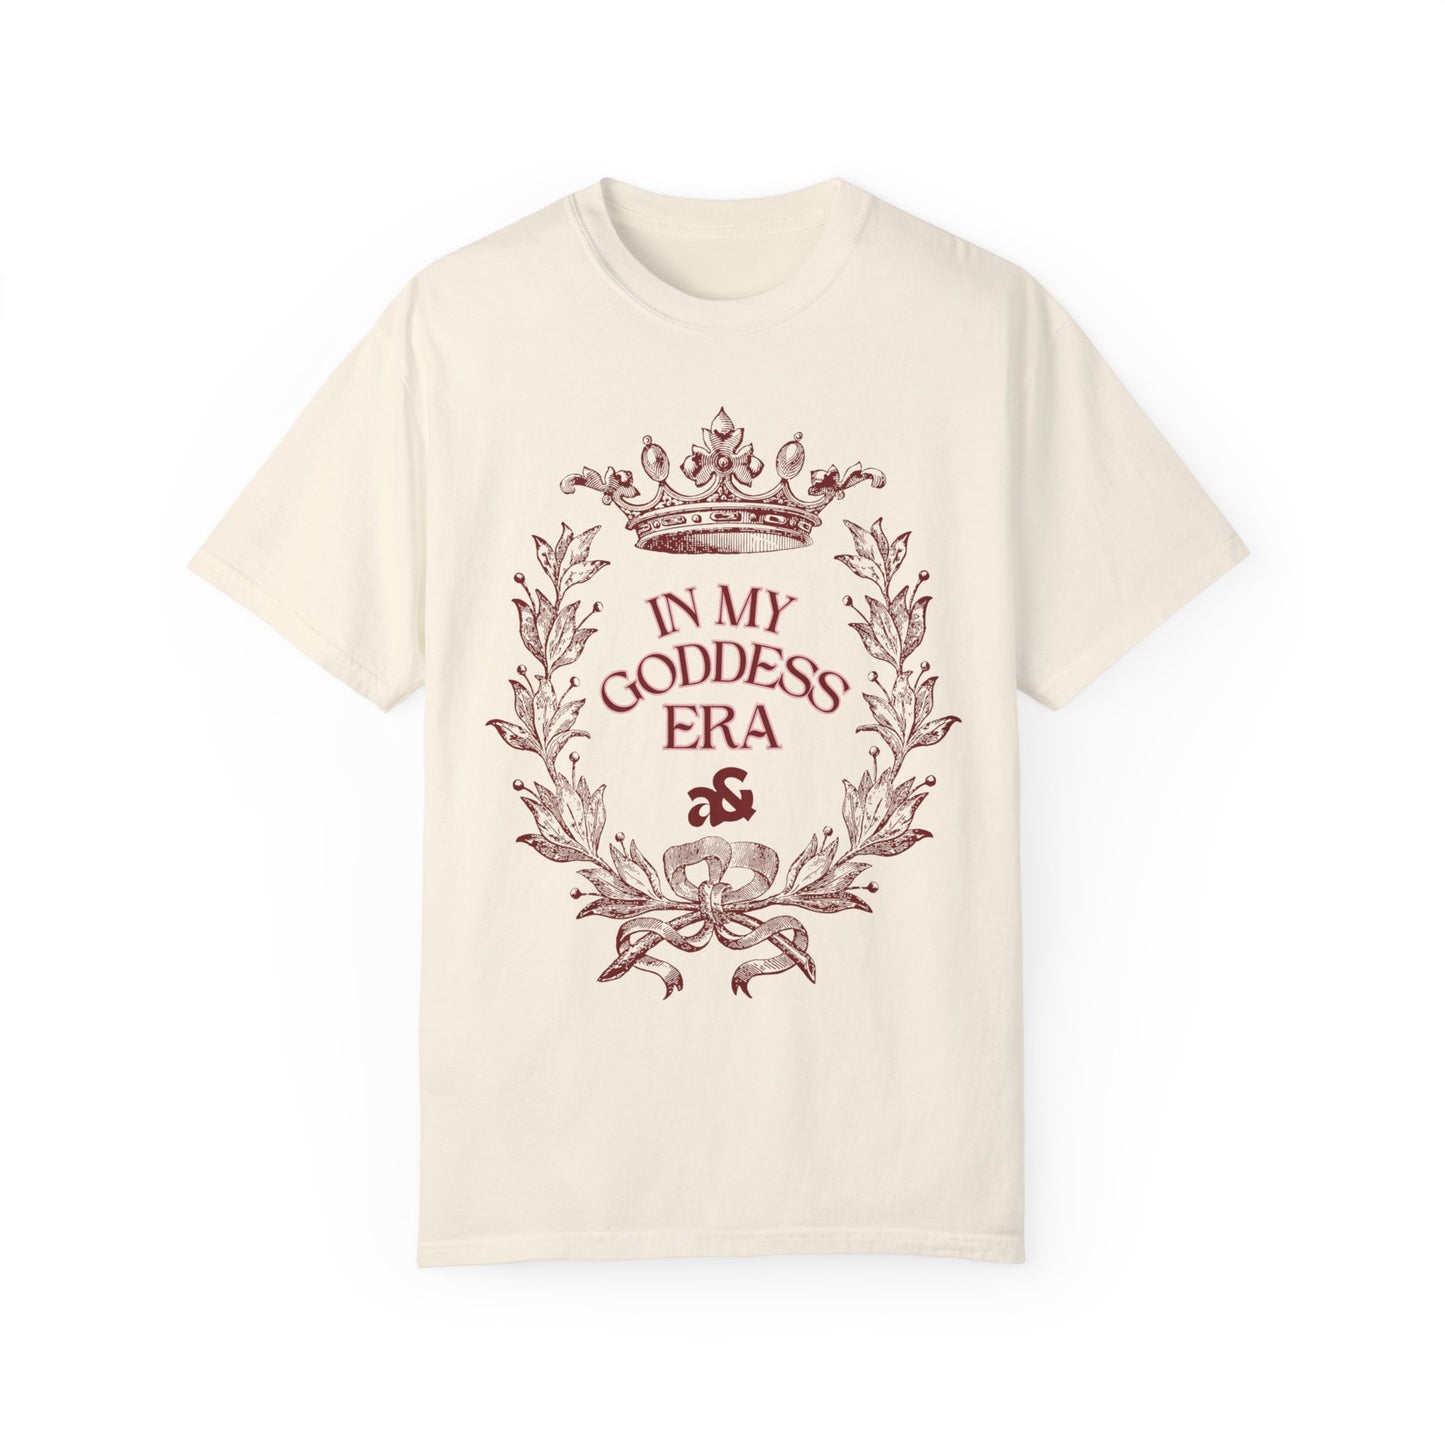 Artemis & Athena 'In My Goddess Era" T-shirt